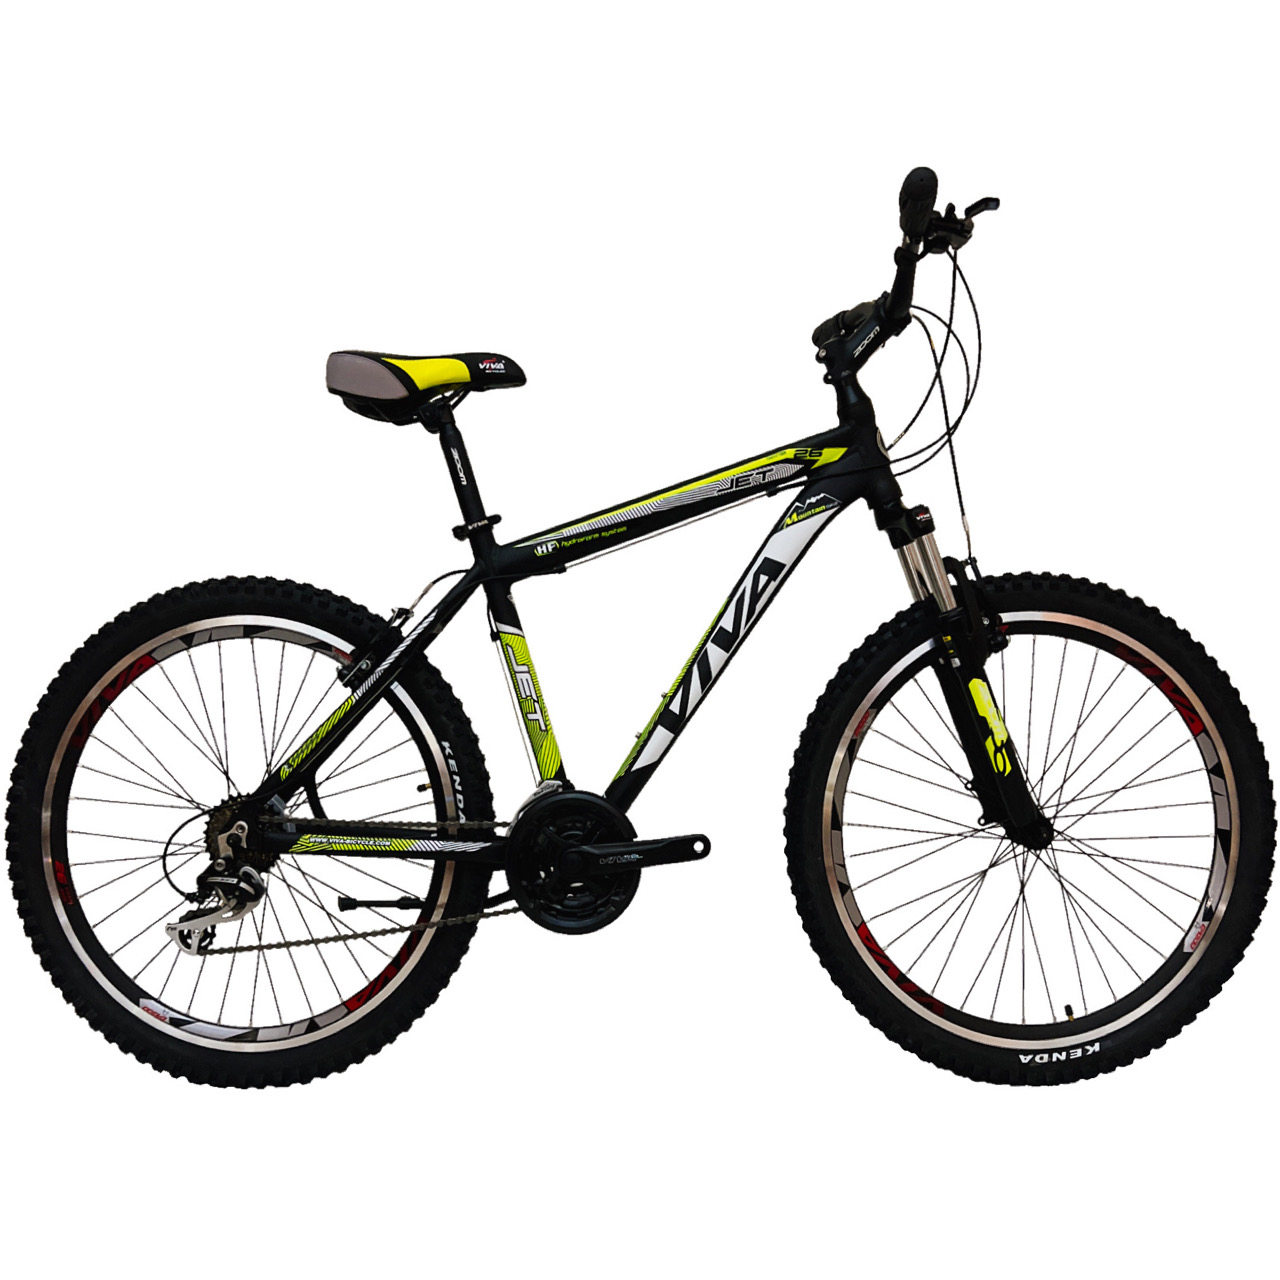 نکته خرید - قیمت روز دوچرخه کوهستان ویوا مدل JET سایز 26 خرید